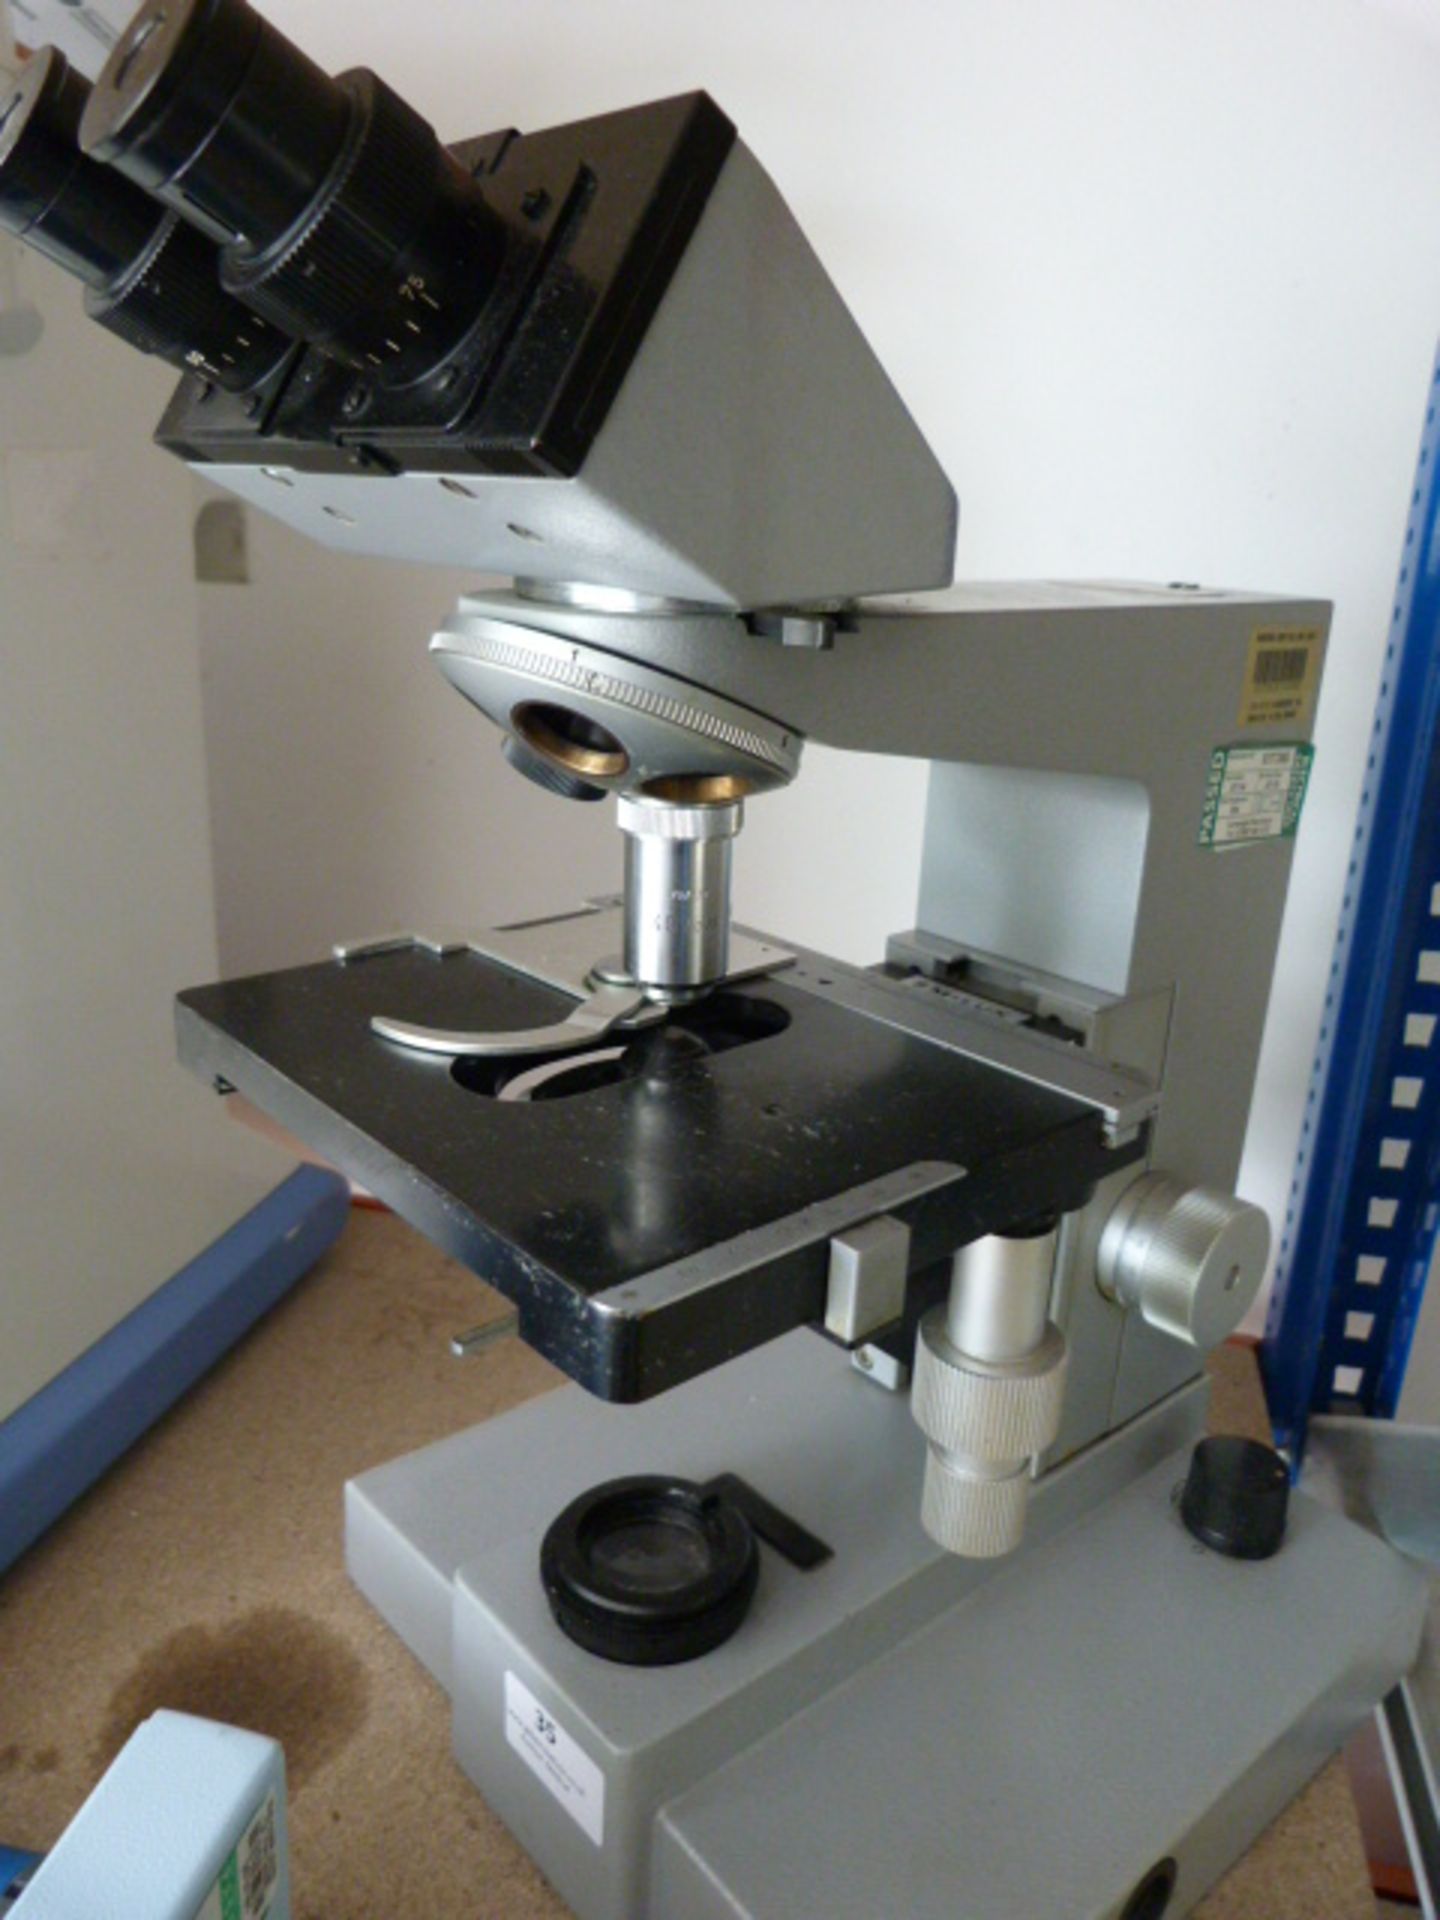 *Leitz Wetzlar SM-LUX Microscope W/1 Objective and Eyepiece